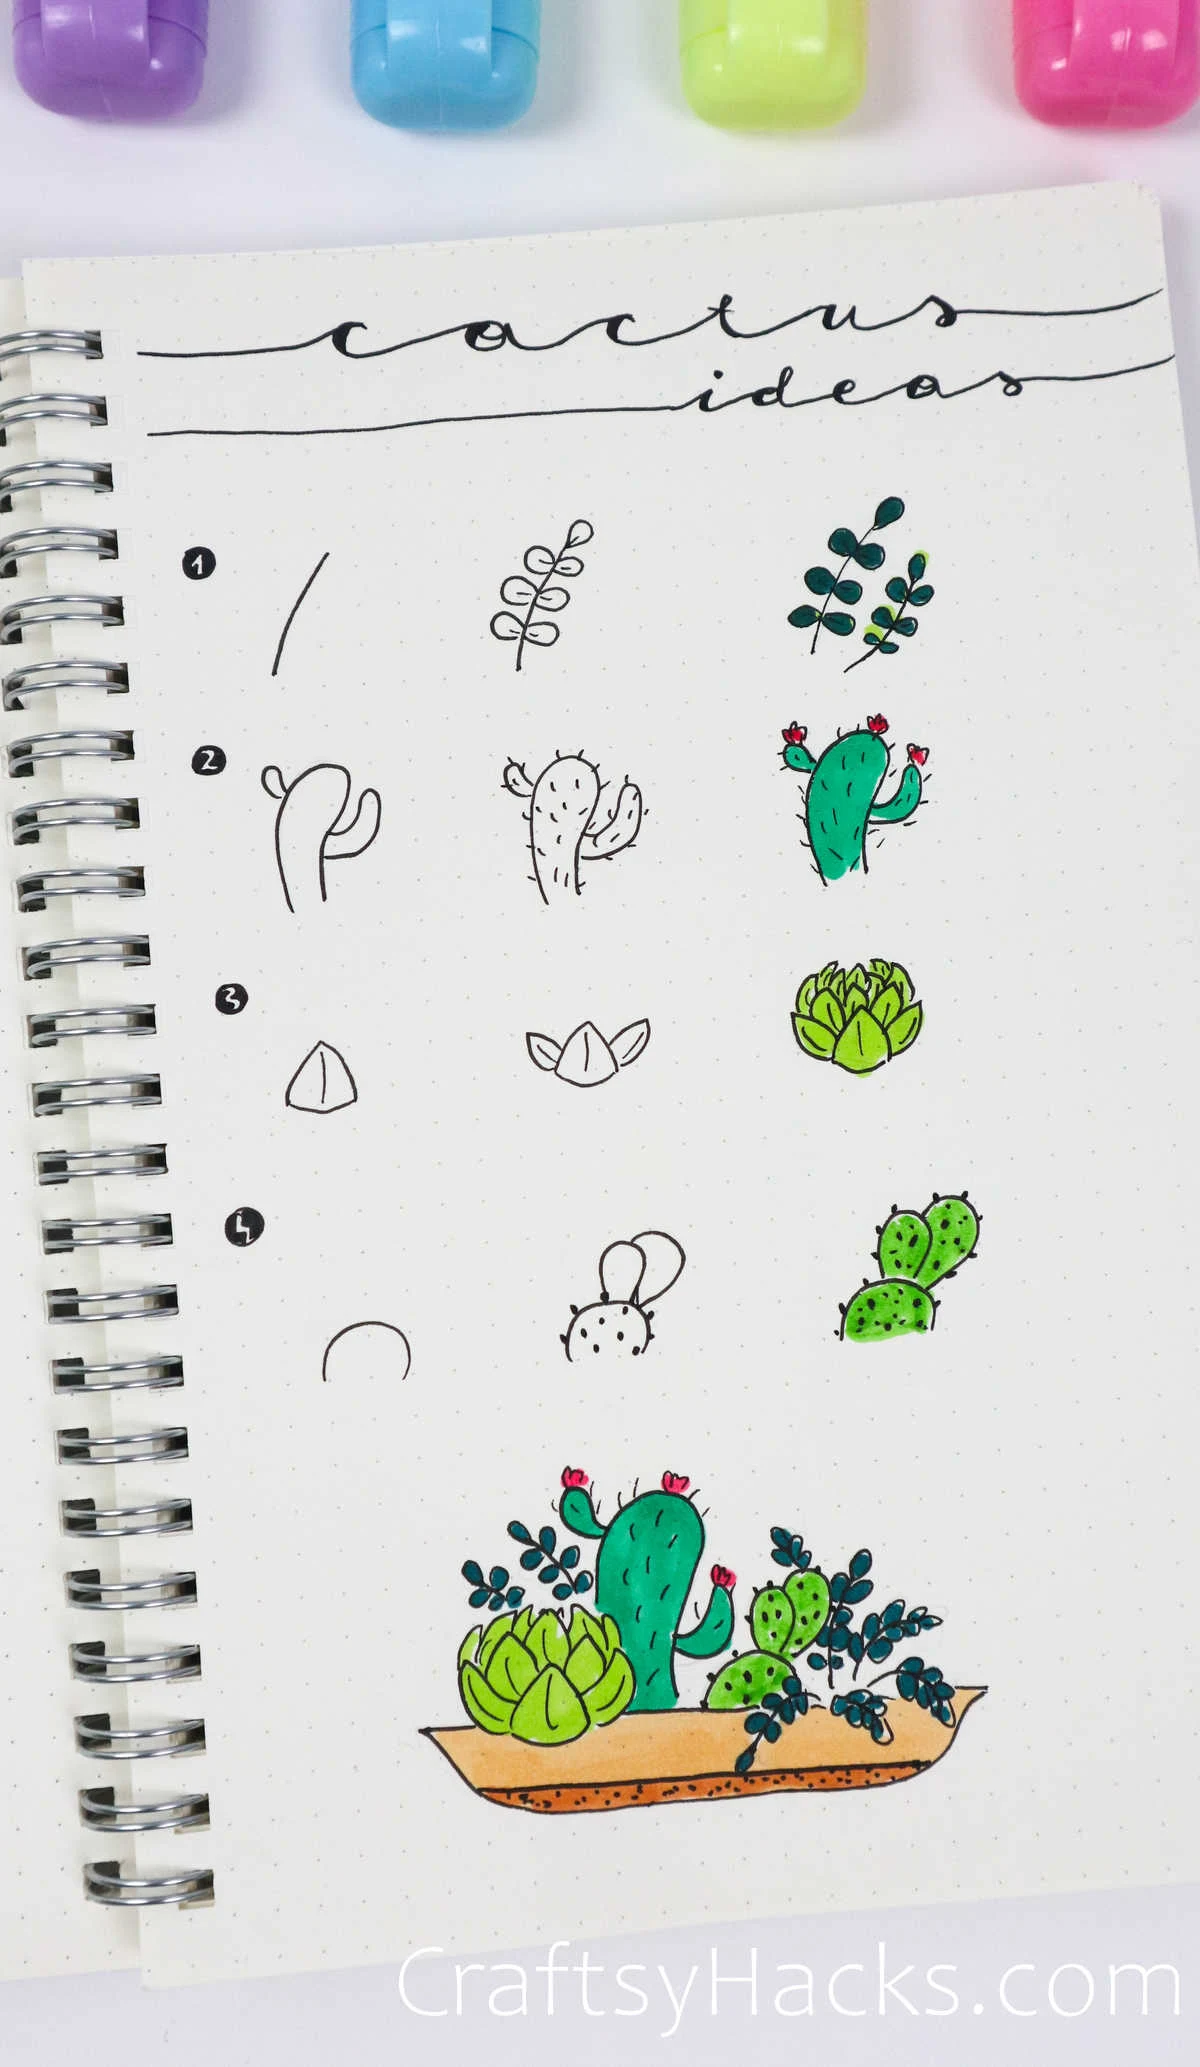 cactus doodle ideas